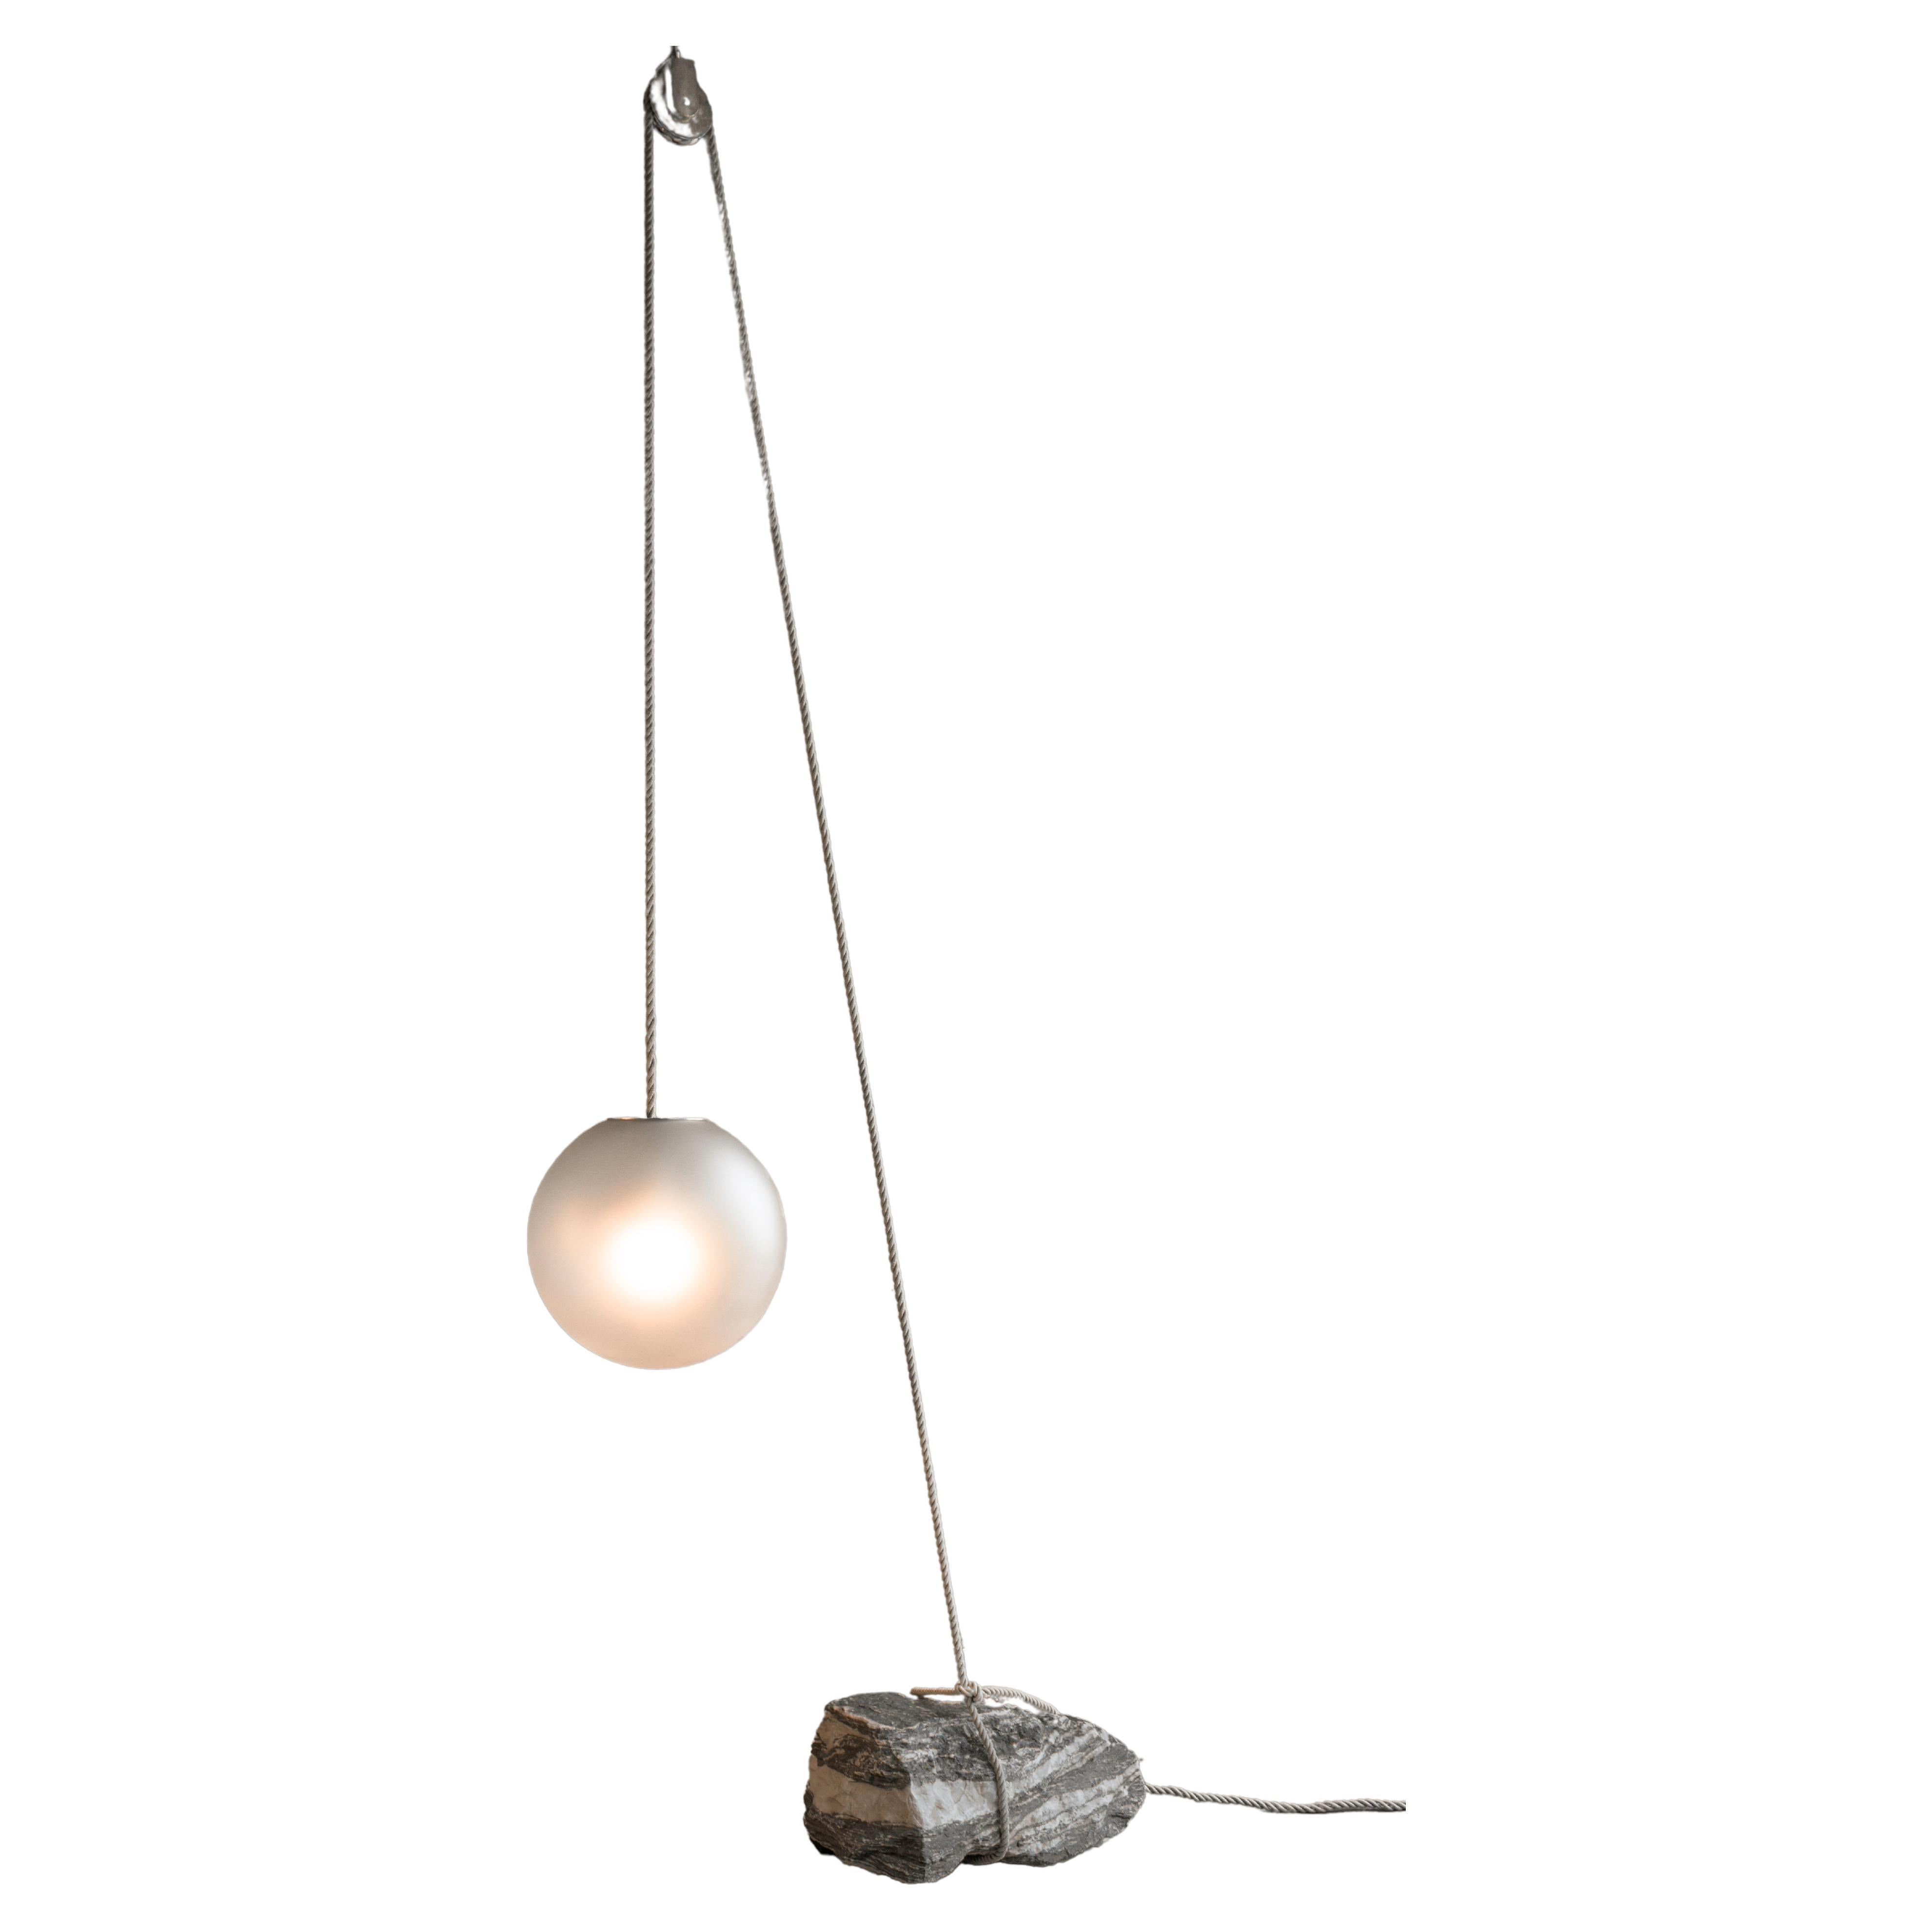 Dutch Beacon of Light D50 Glass Ball Sculptural Natural Stone Pendant Floor Lamp